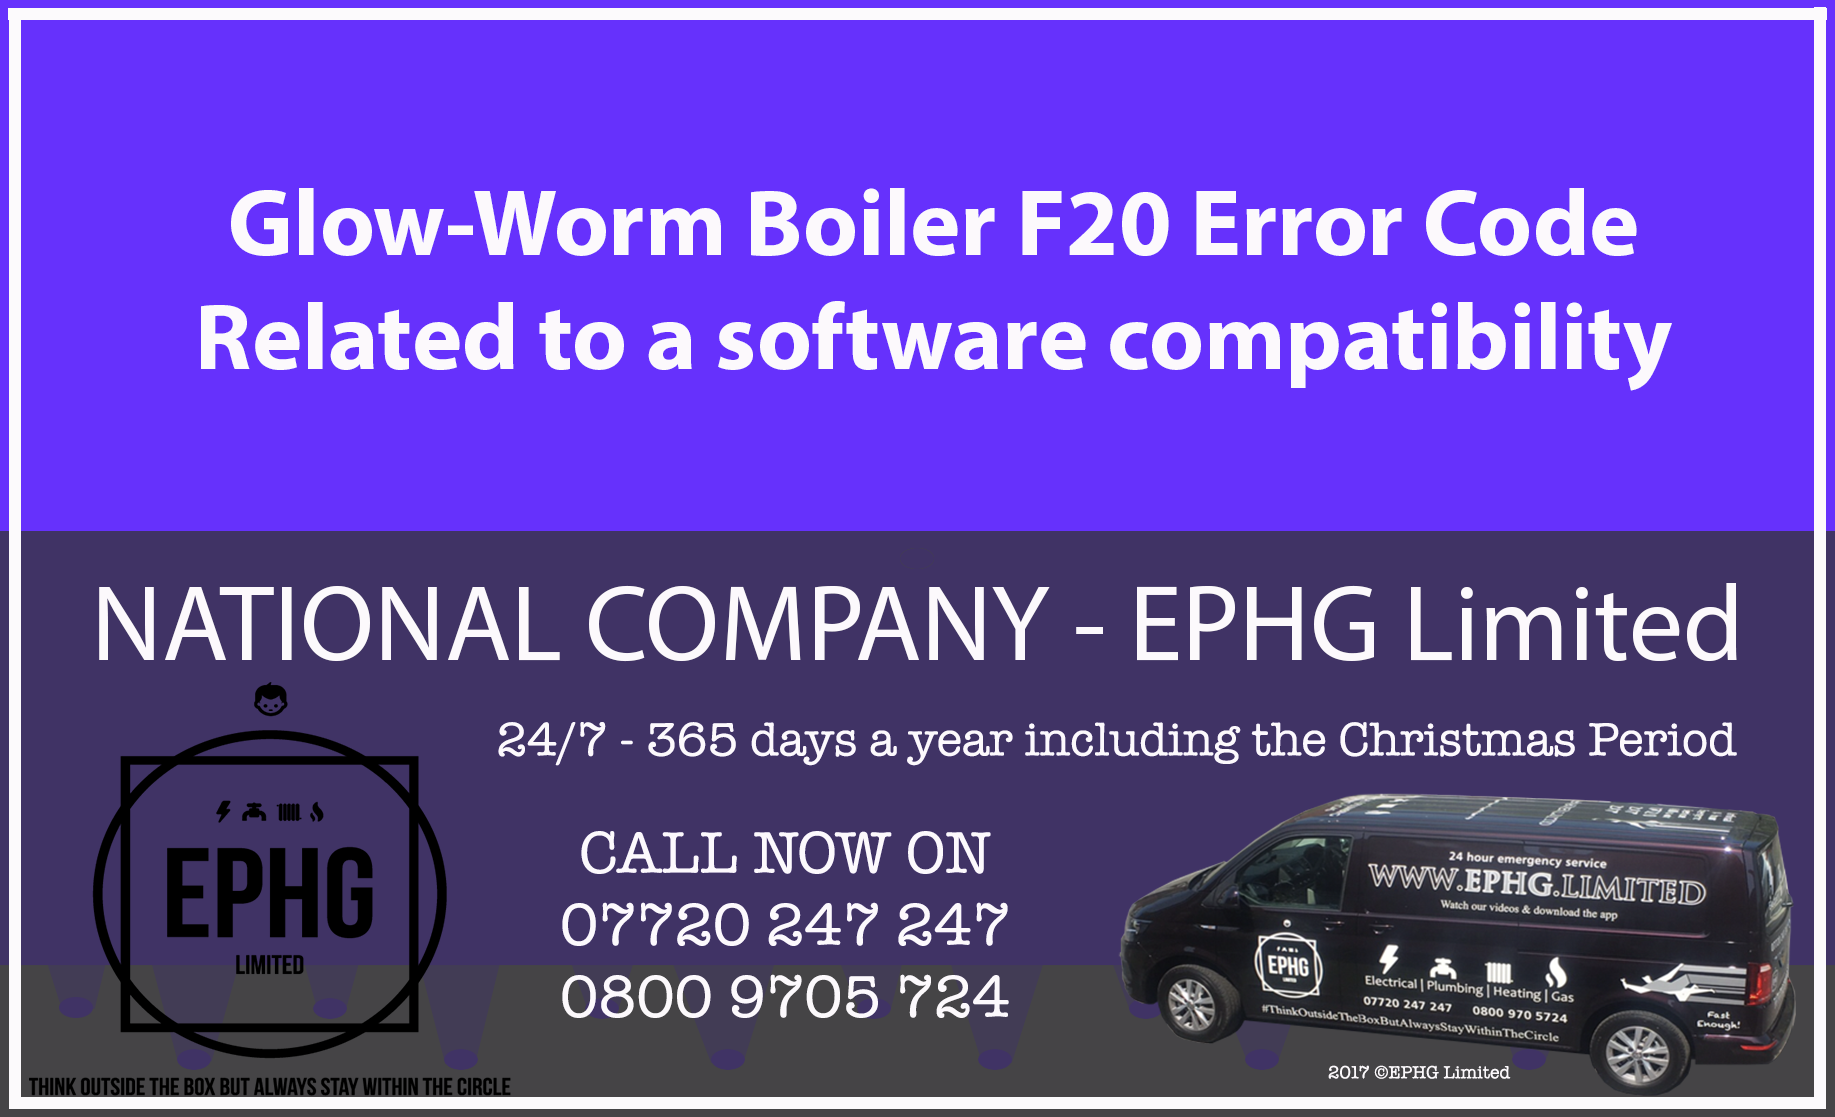 Glow-Worm boiler error code F20